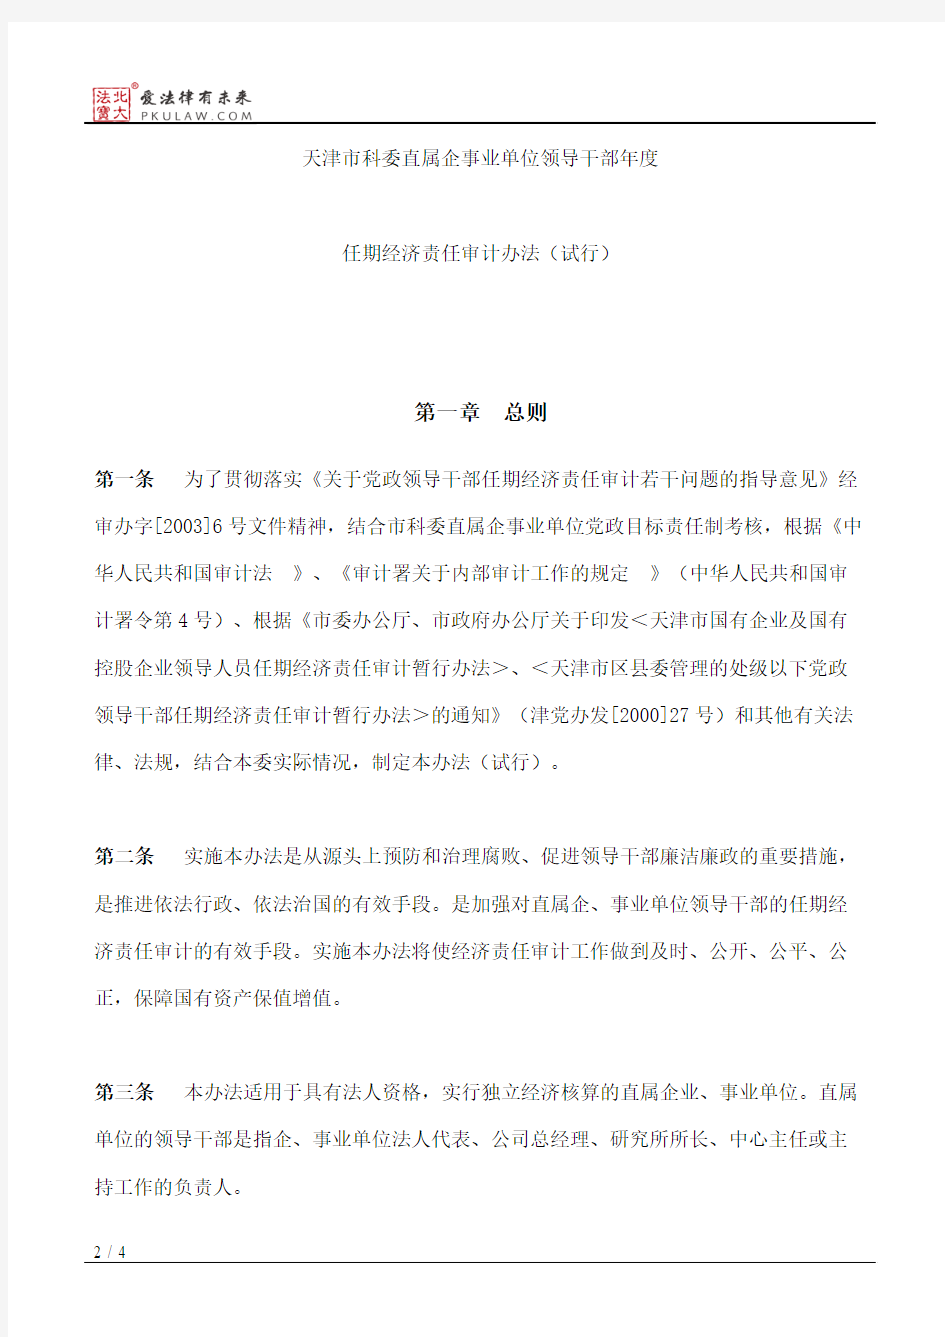 天津市科学技术委员会关于印发《天津市科委直属企事业单位领导干